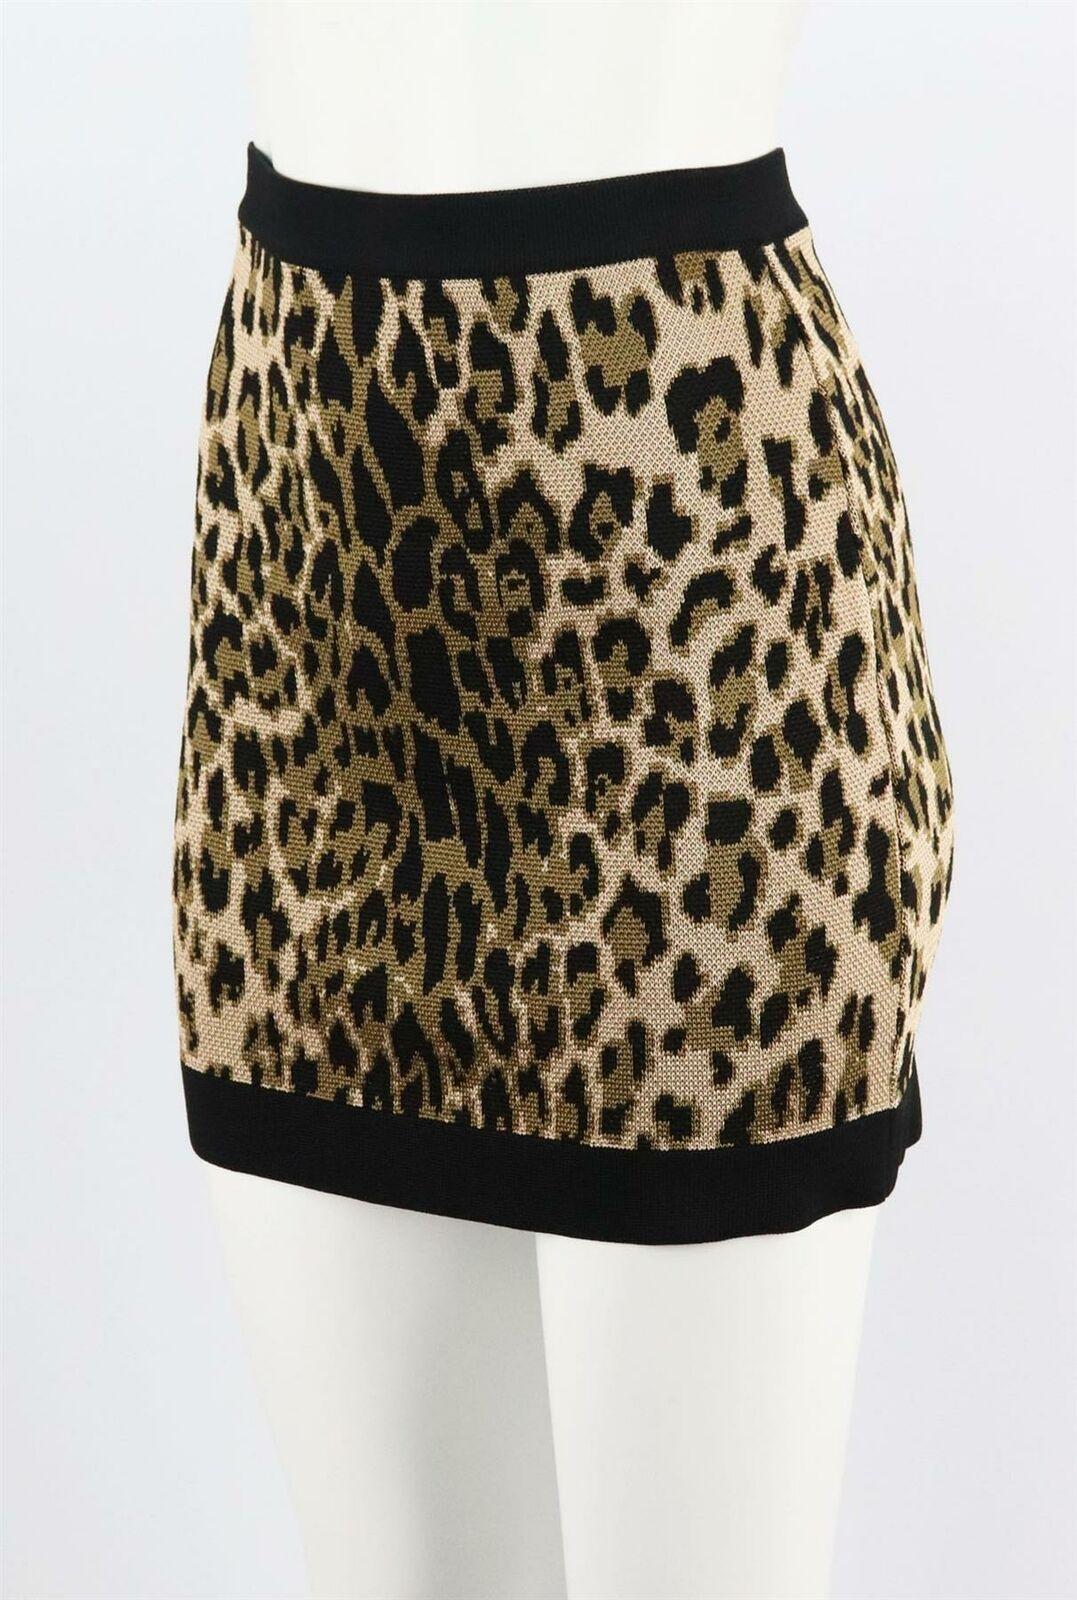 balmain leopard skirt